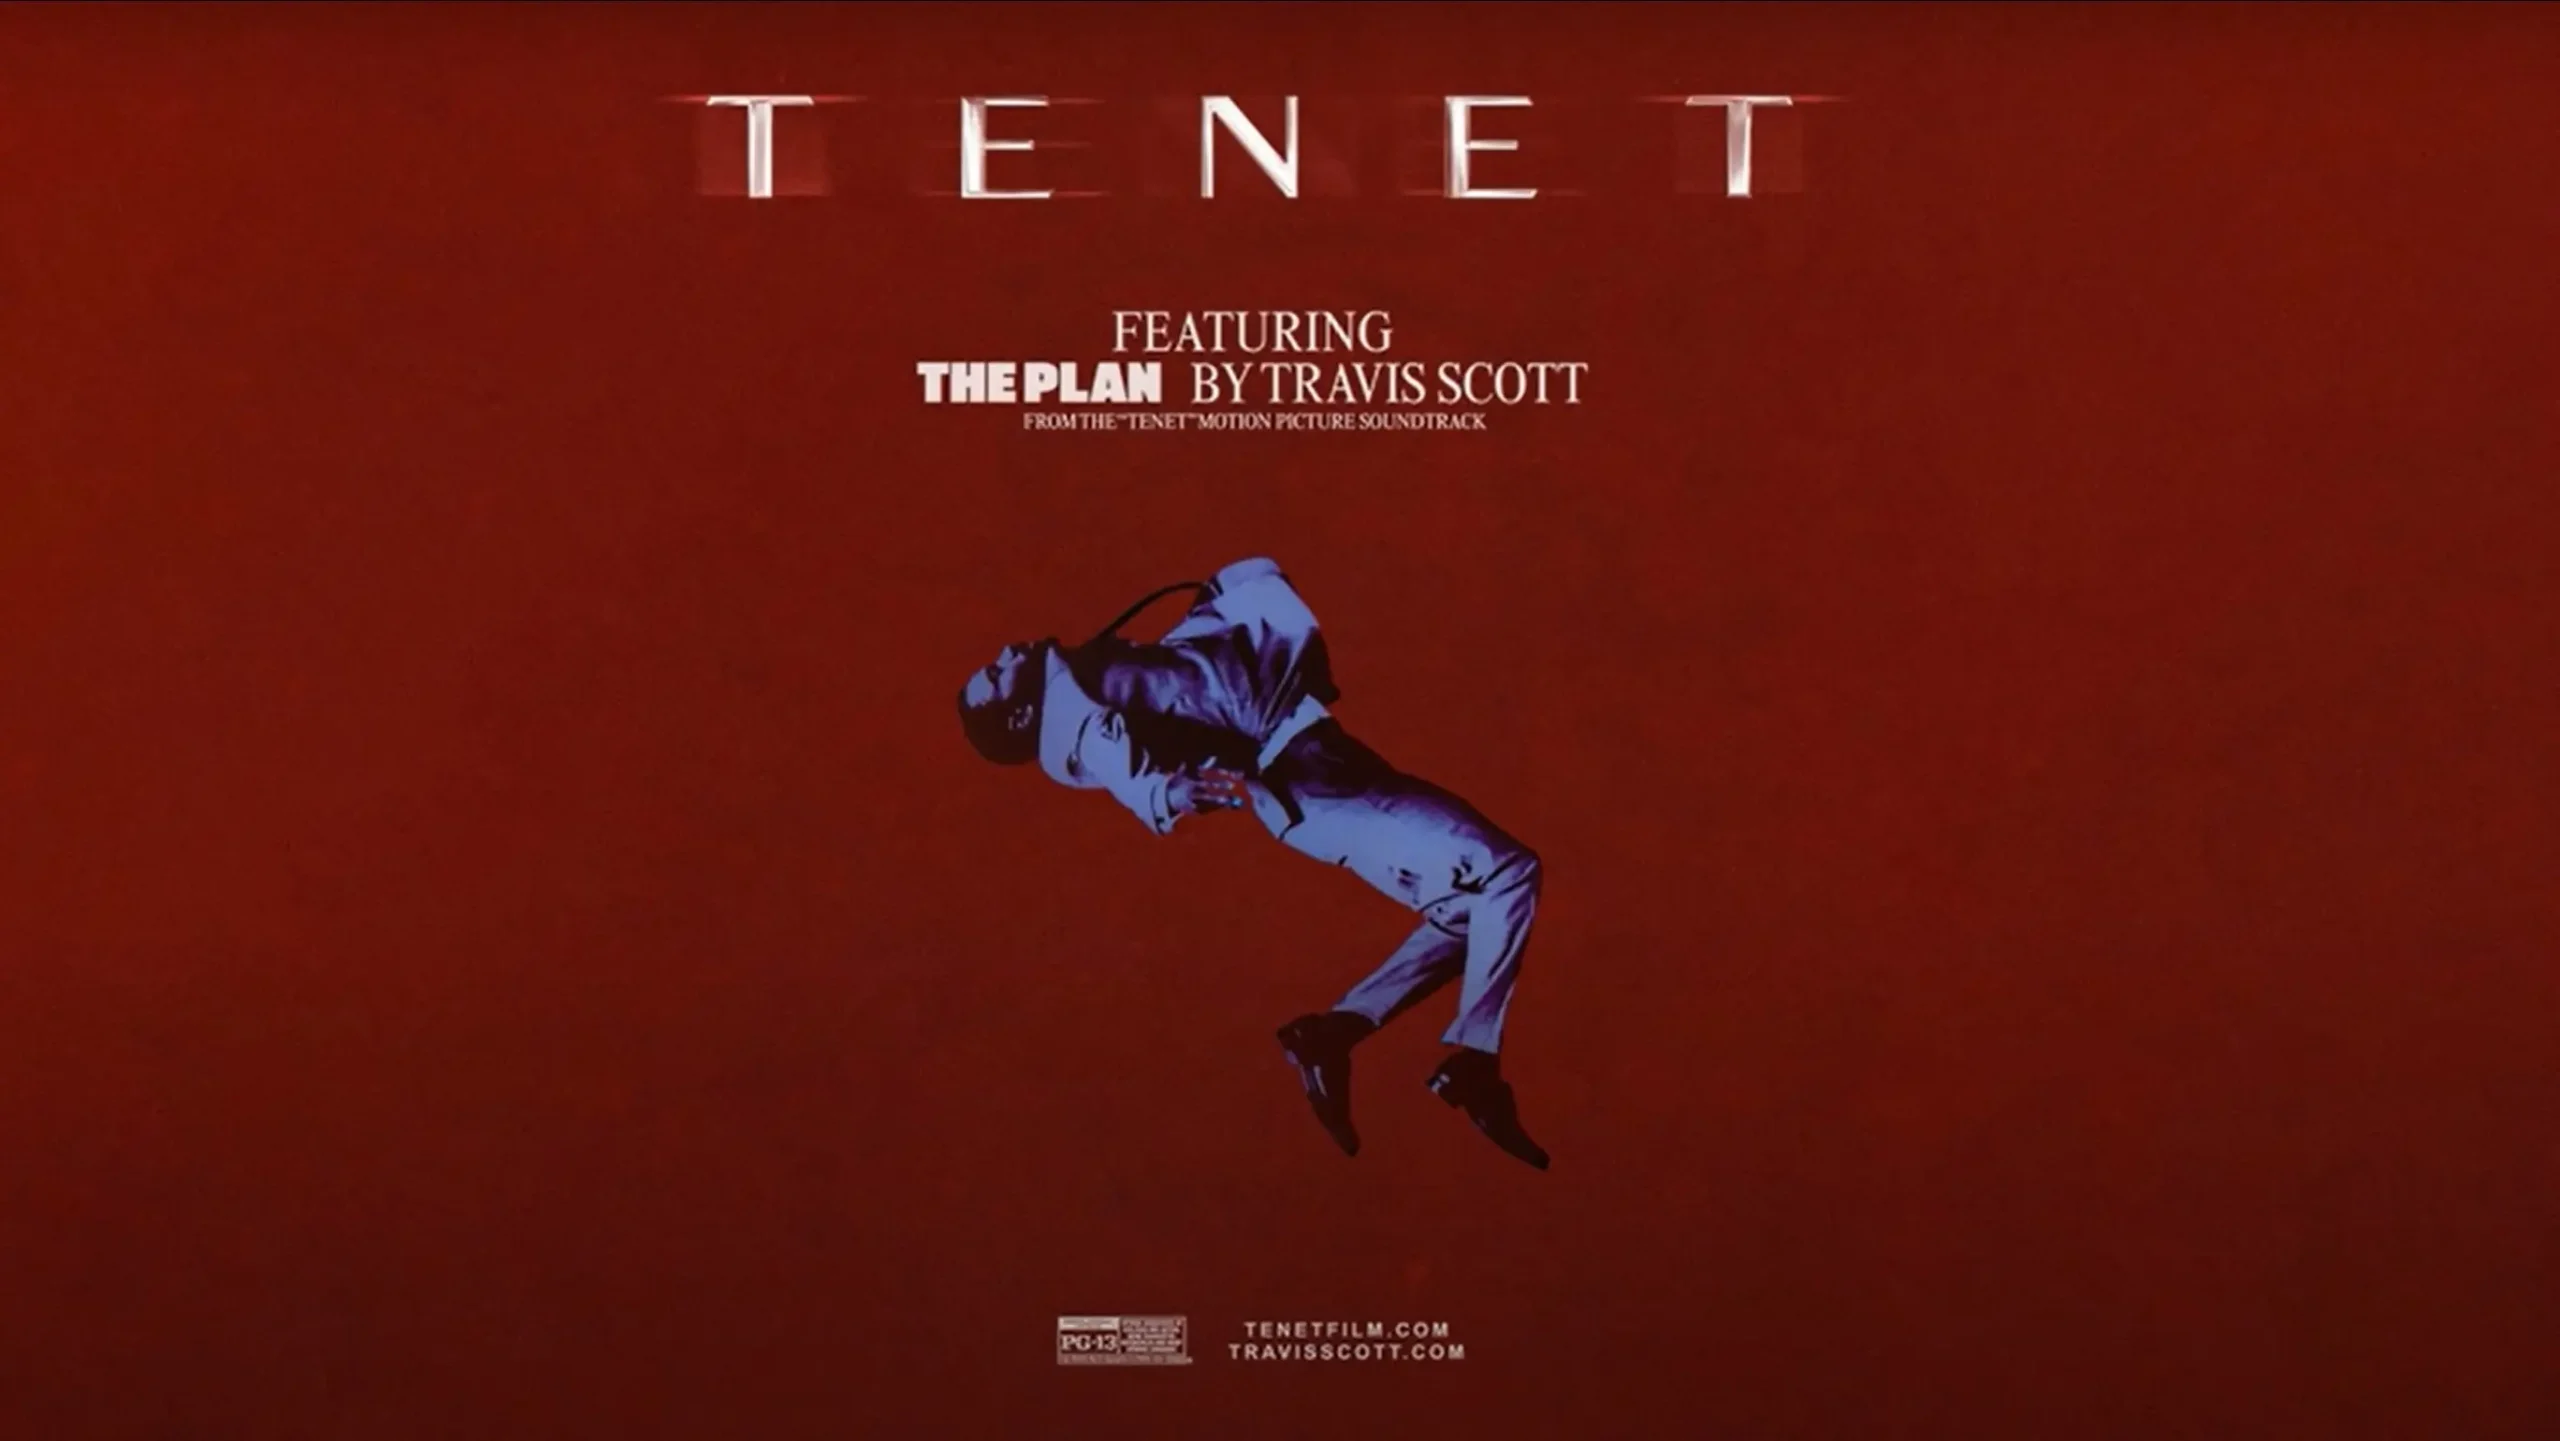 トラヴィス・スコットによる「TENET テネット」エンディング曲「The Plan」